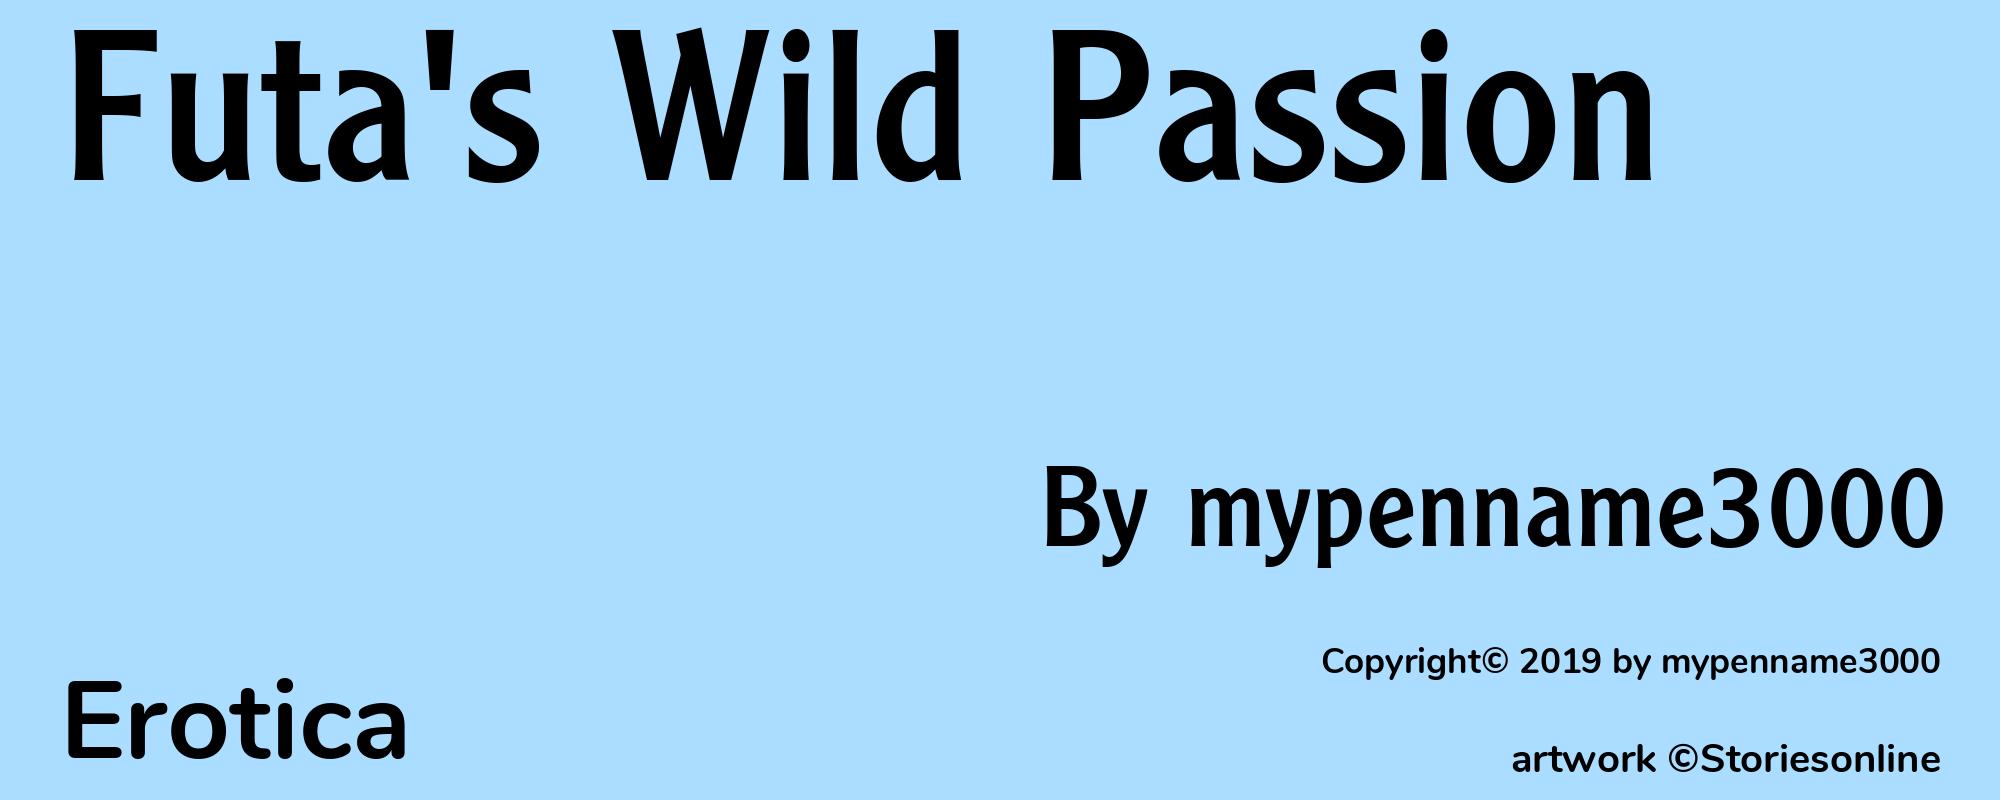 Futa's Wild Passion - Cover